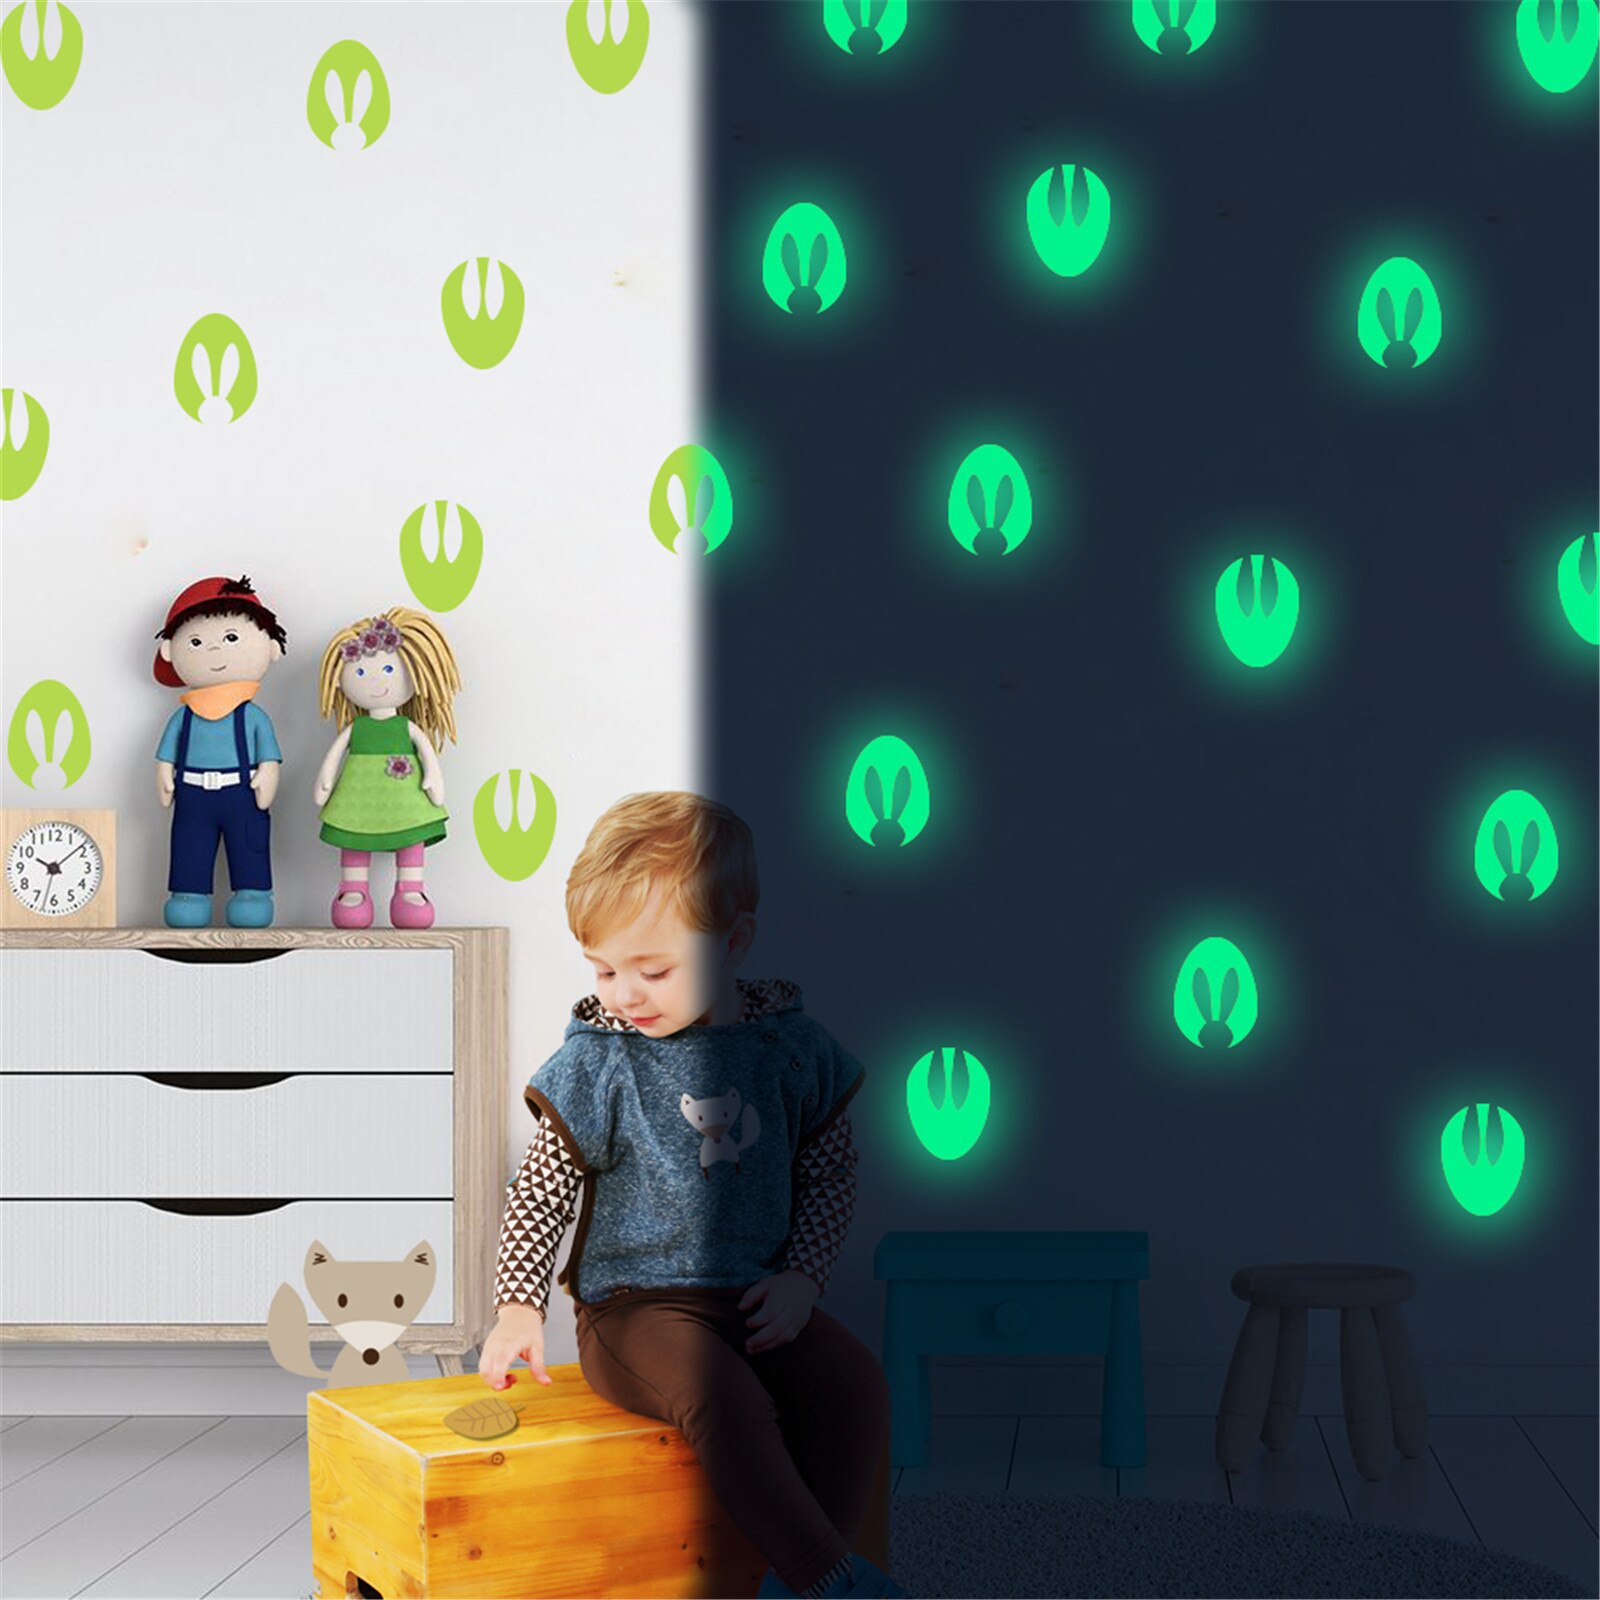 Lichtgevende Voetafdrukken Pvc Sticker Plafond Slaapkamer, Pasen Woondecoratie Delicate Draagbare Persoonlijkheid Handig Hulpmiddel